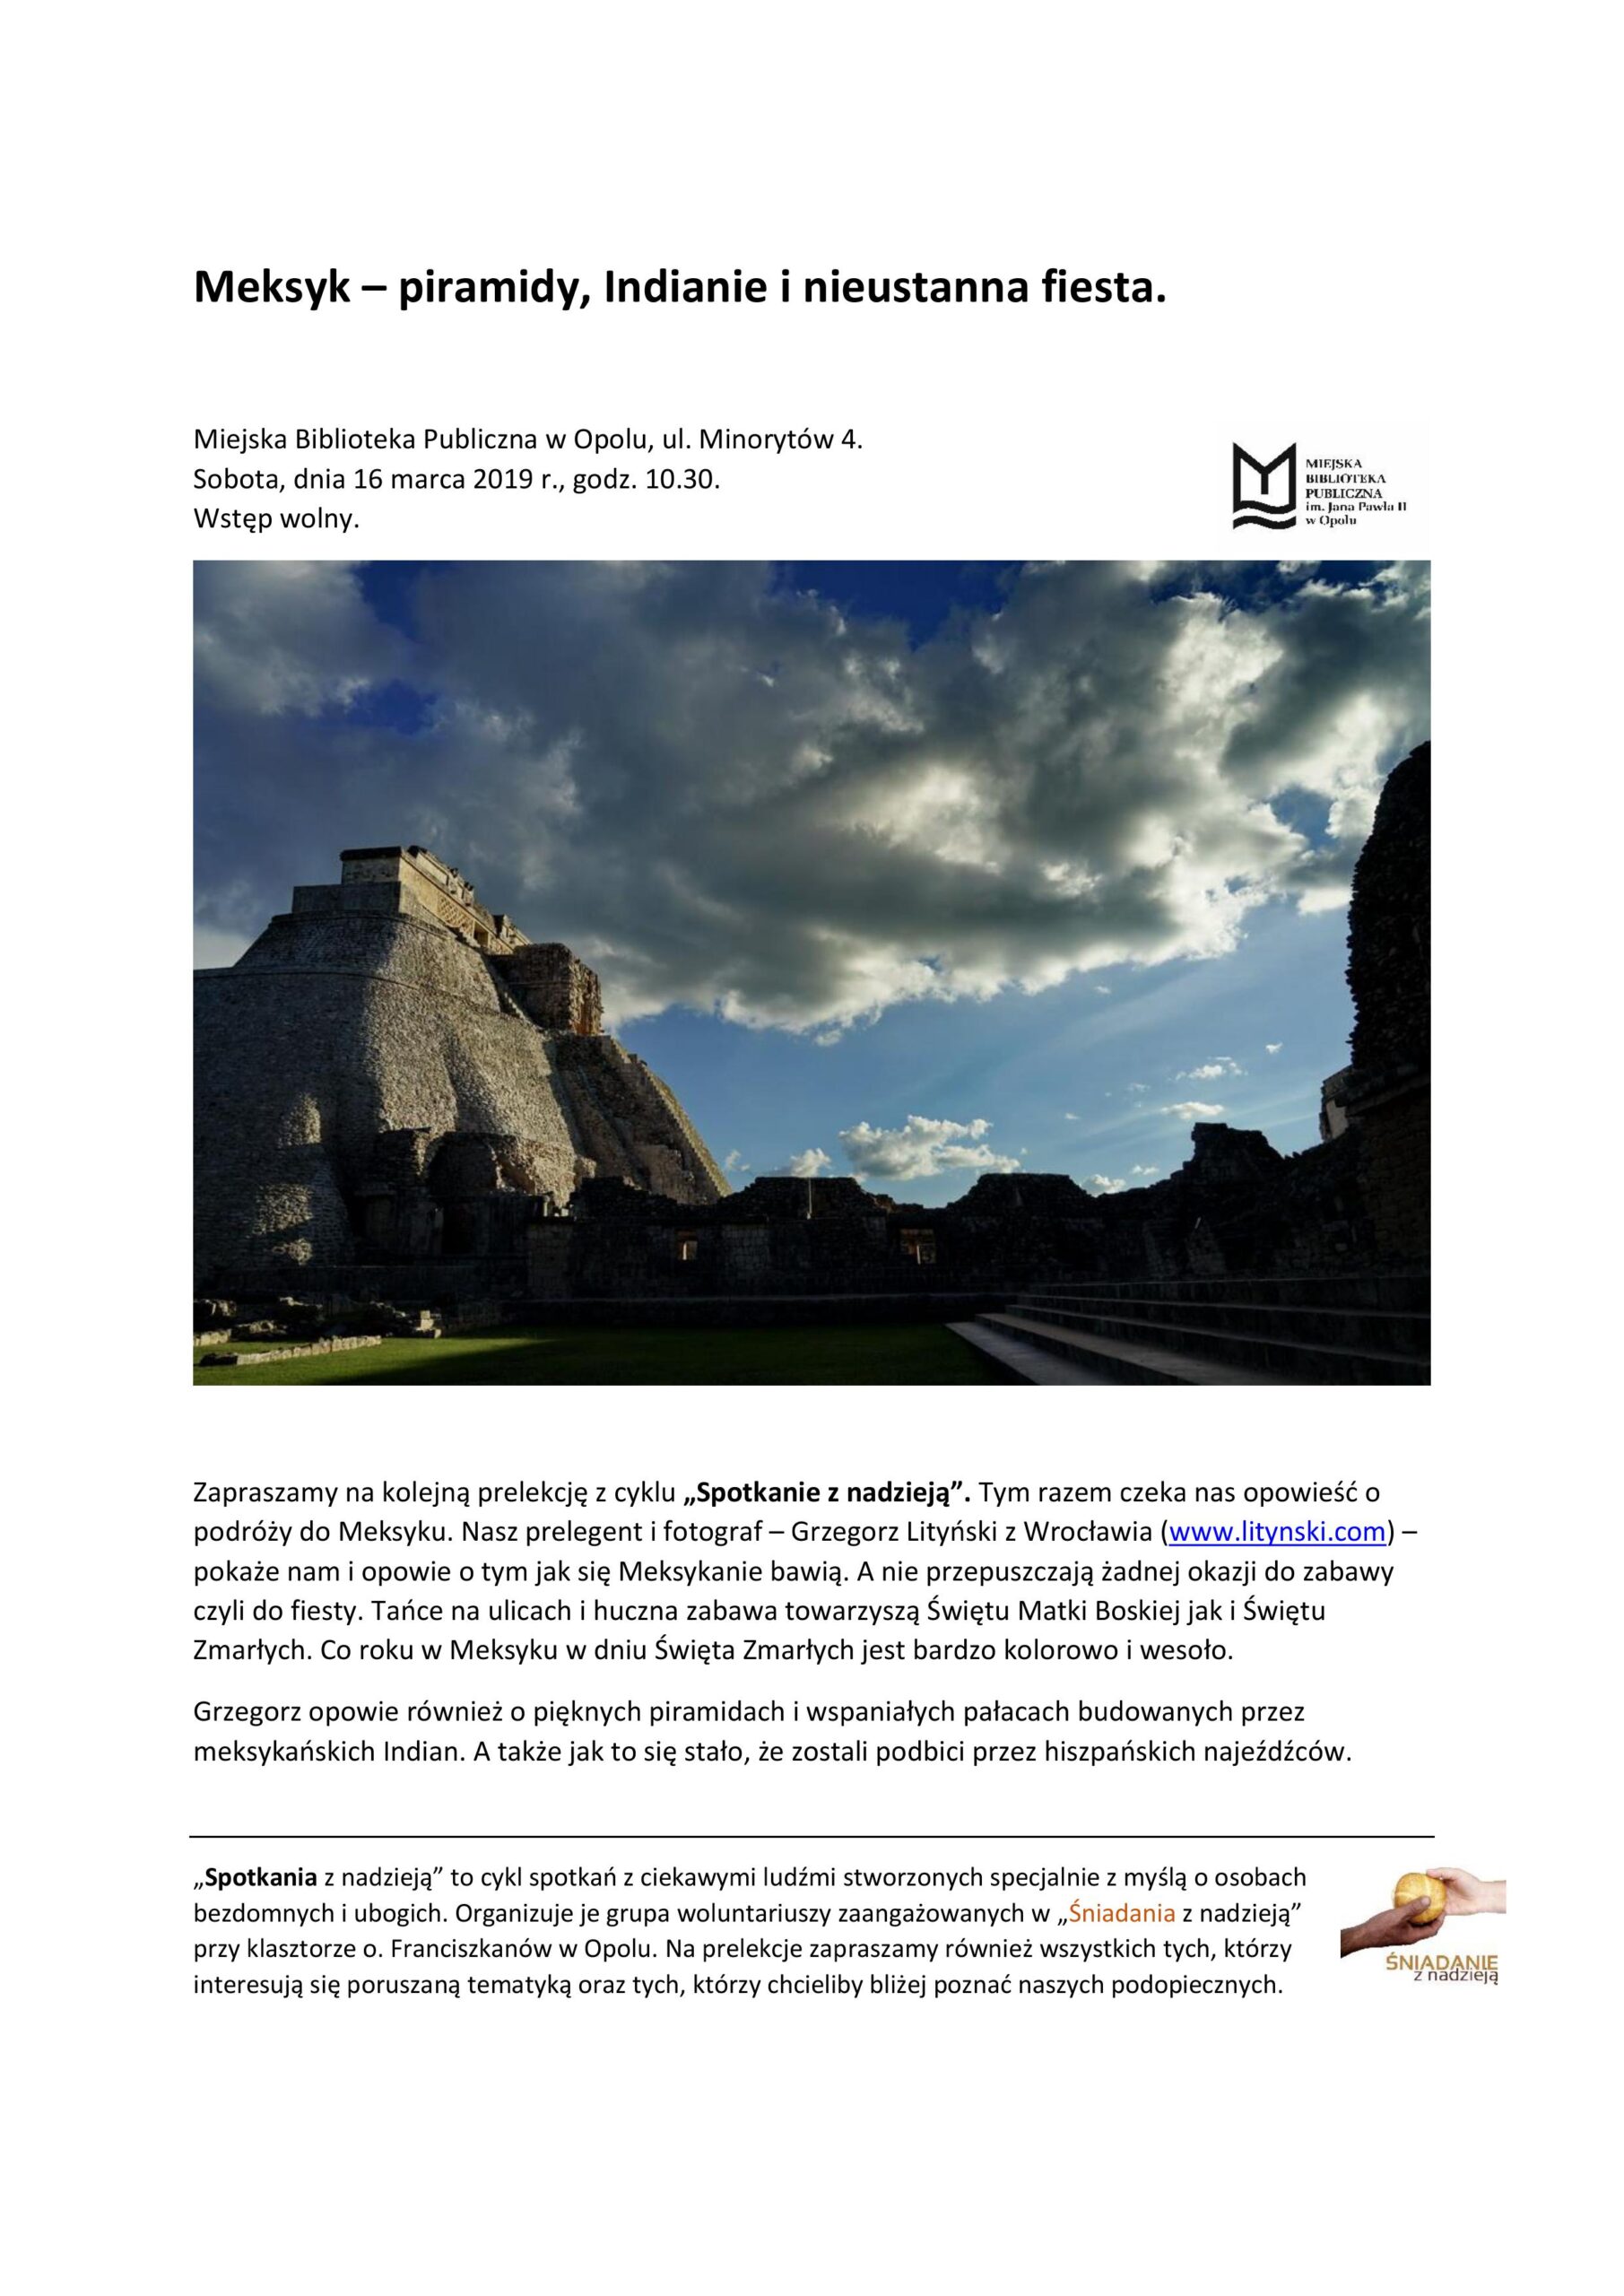 Spotkanie z nadzieją: Meksyk - piramidy, Indianie i nieustanna fiesta